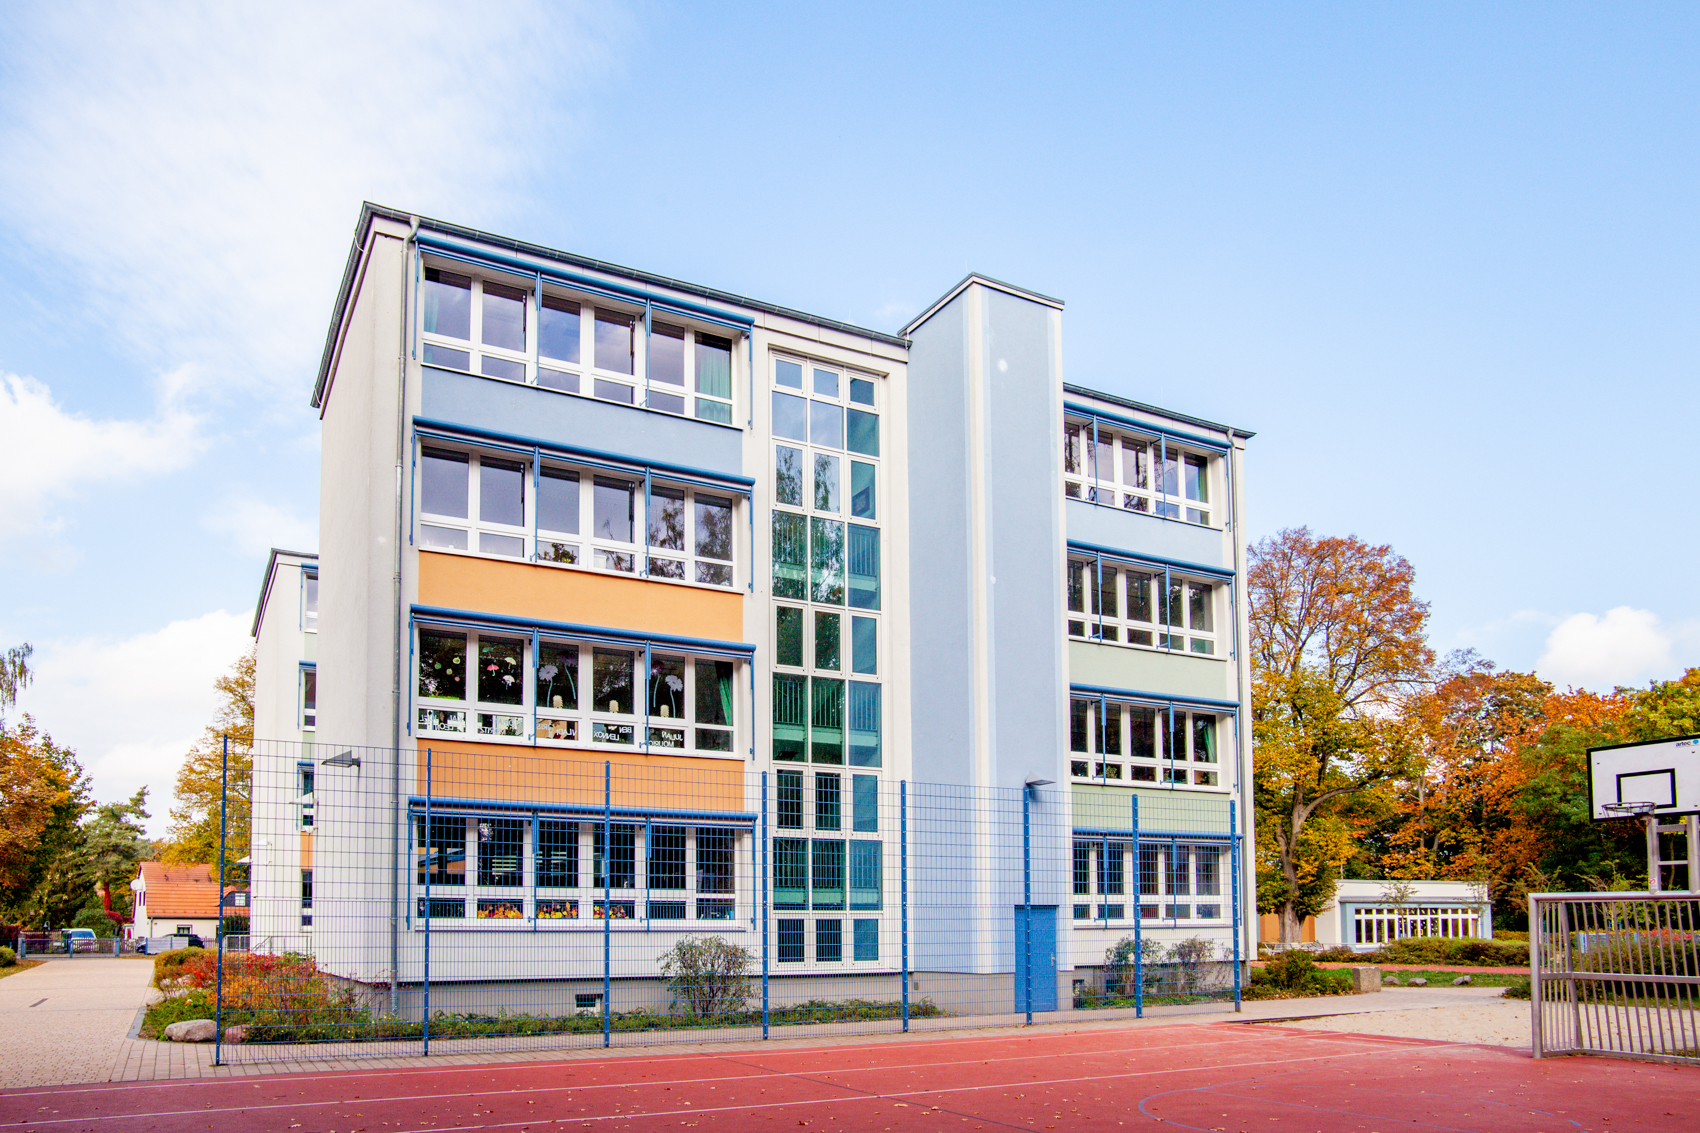 vierstöckiges Schulgebäude mit farbigen Akzenten und Ballspielfeld